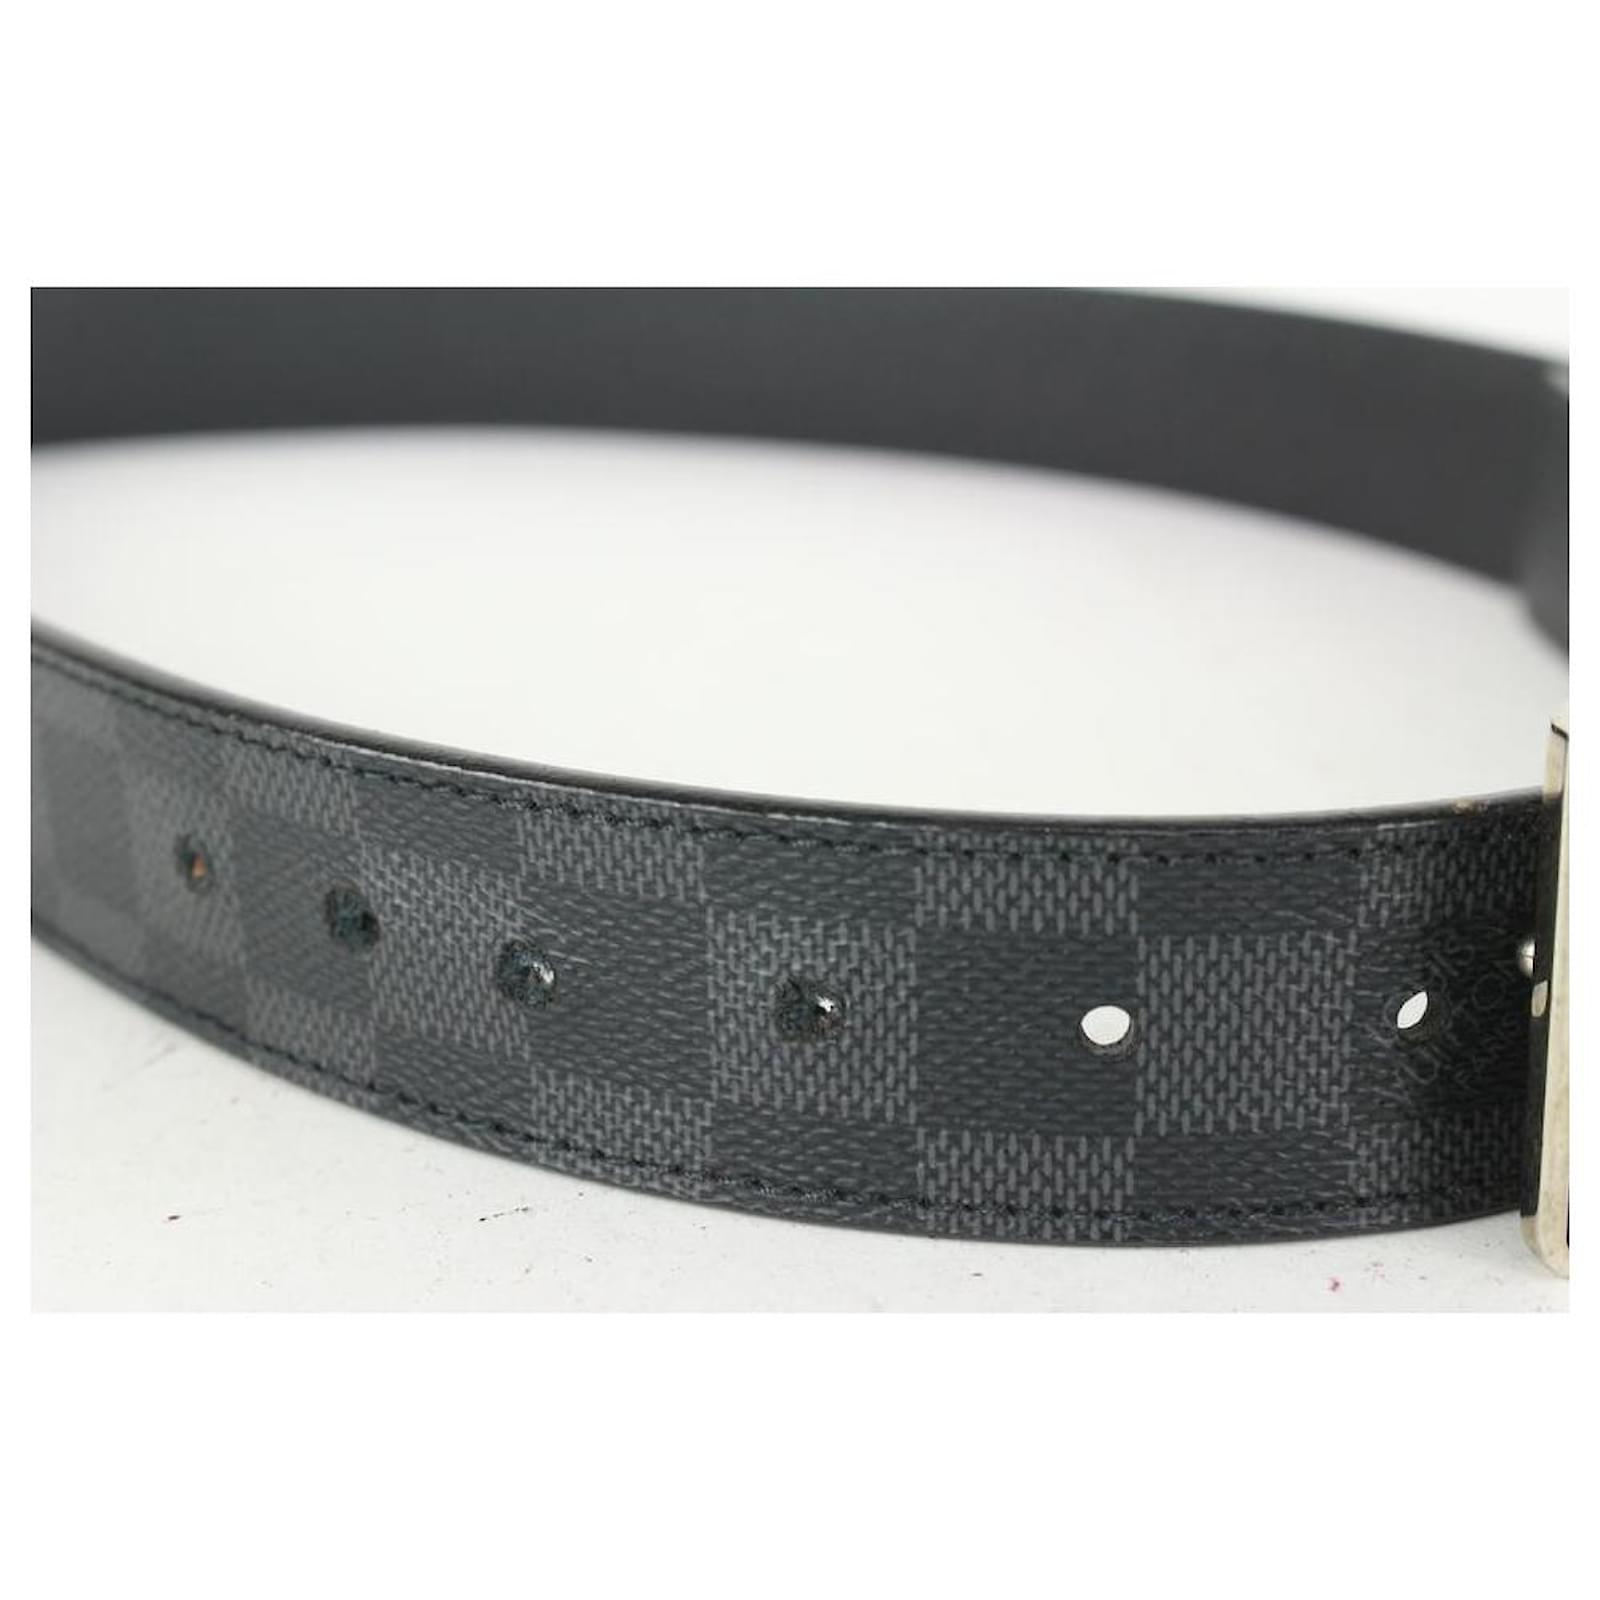 Louis Vuitton Inventeur Damier Graphite Reversible Belt - Black